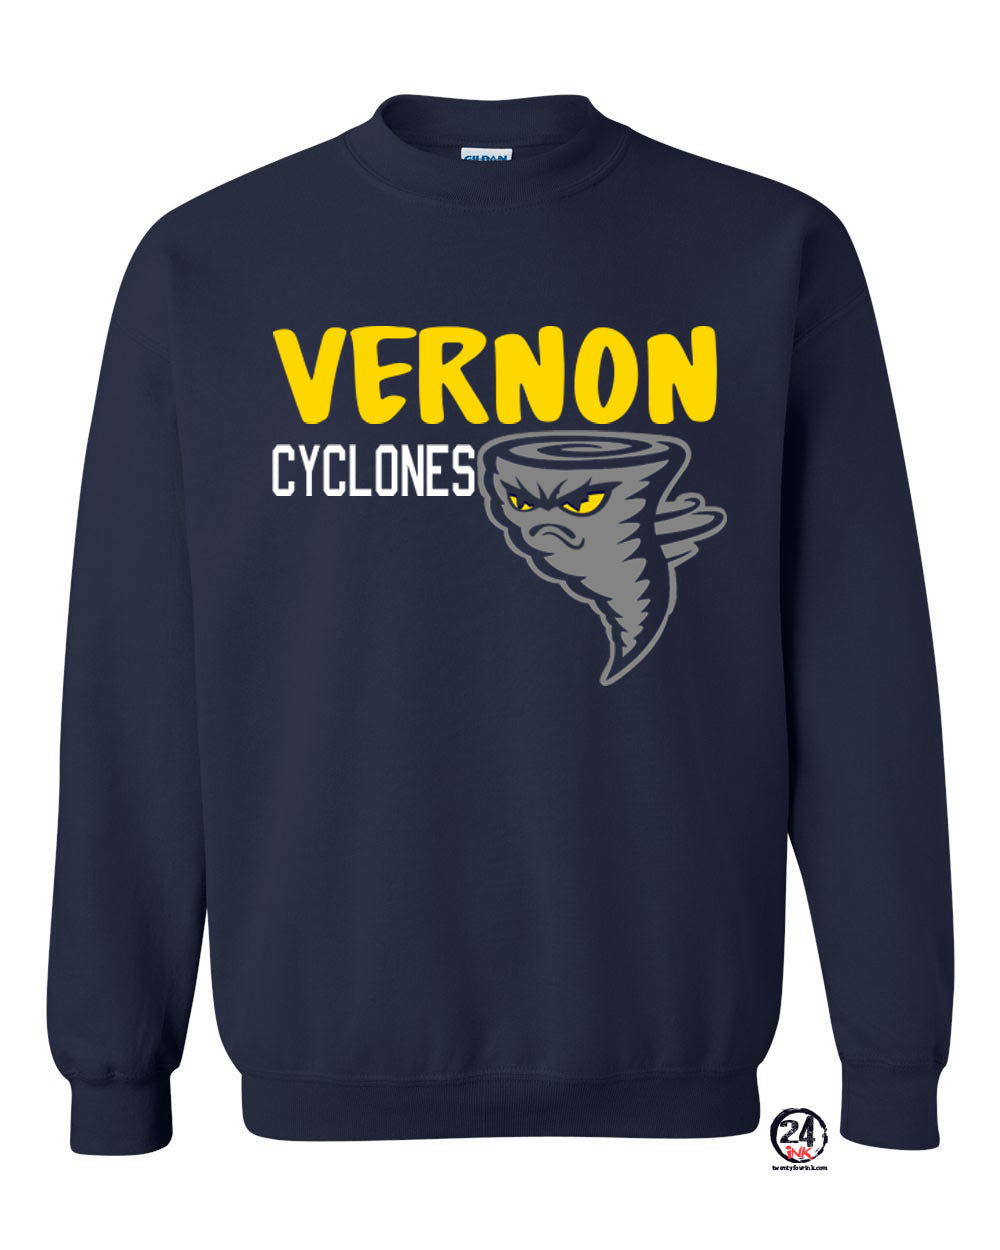 Cyclones Design 1 non hooded sweatshirt